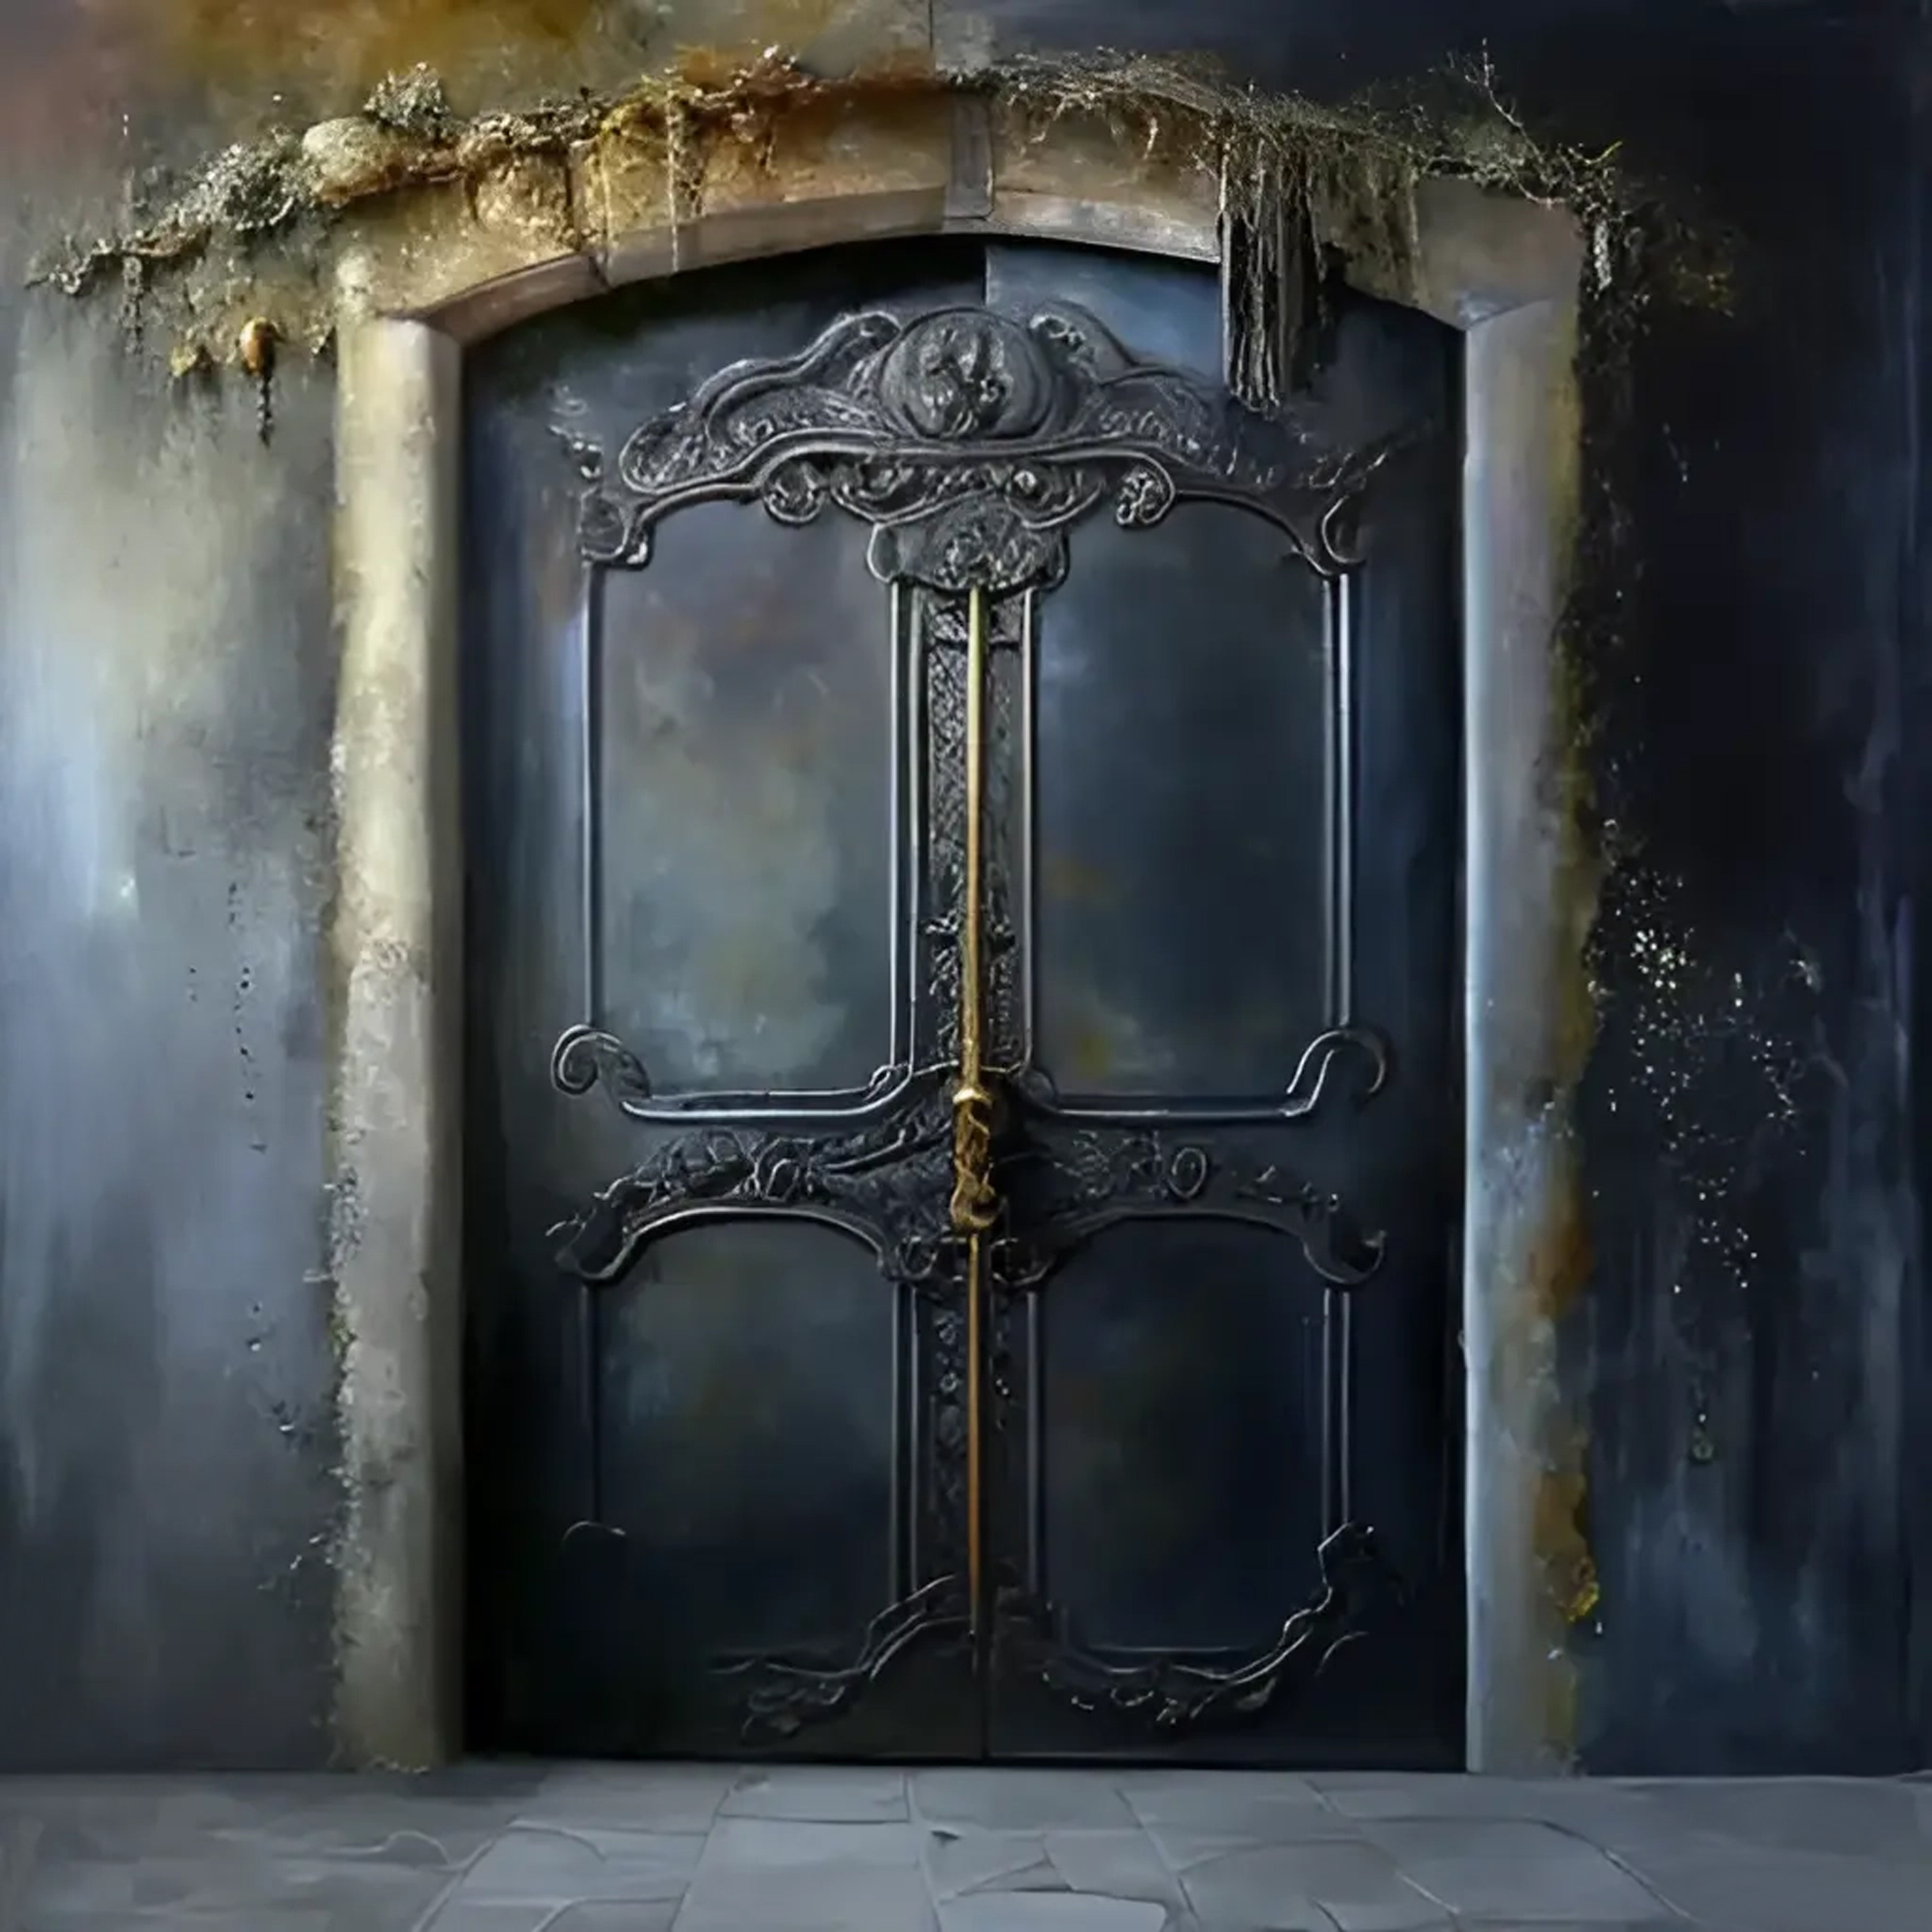 XII - The door of XNLKX